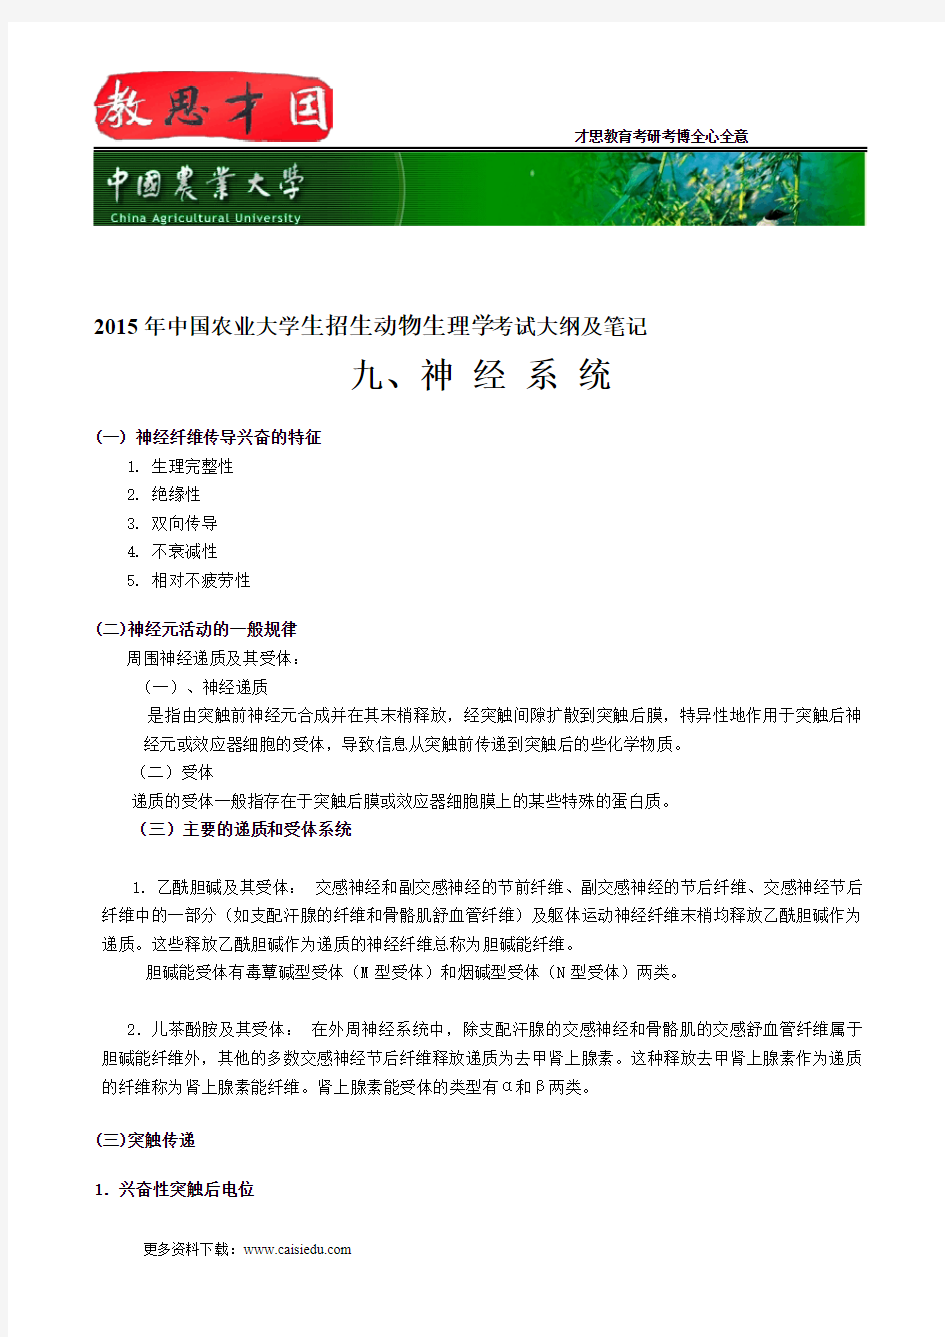 2015年中国农业大学生招生动物生理学考试大纲及笔记